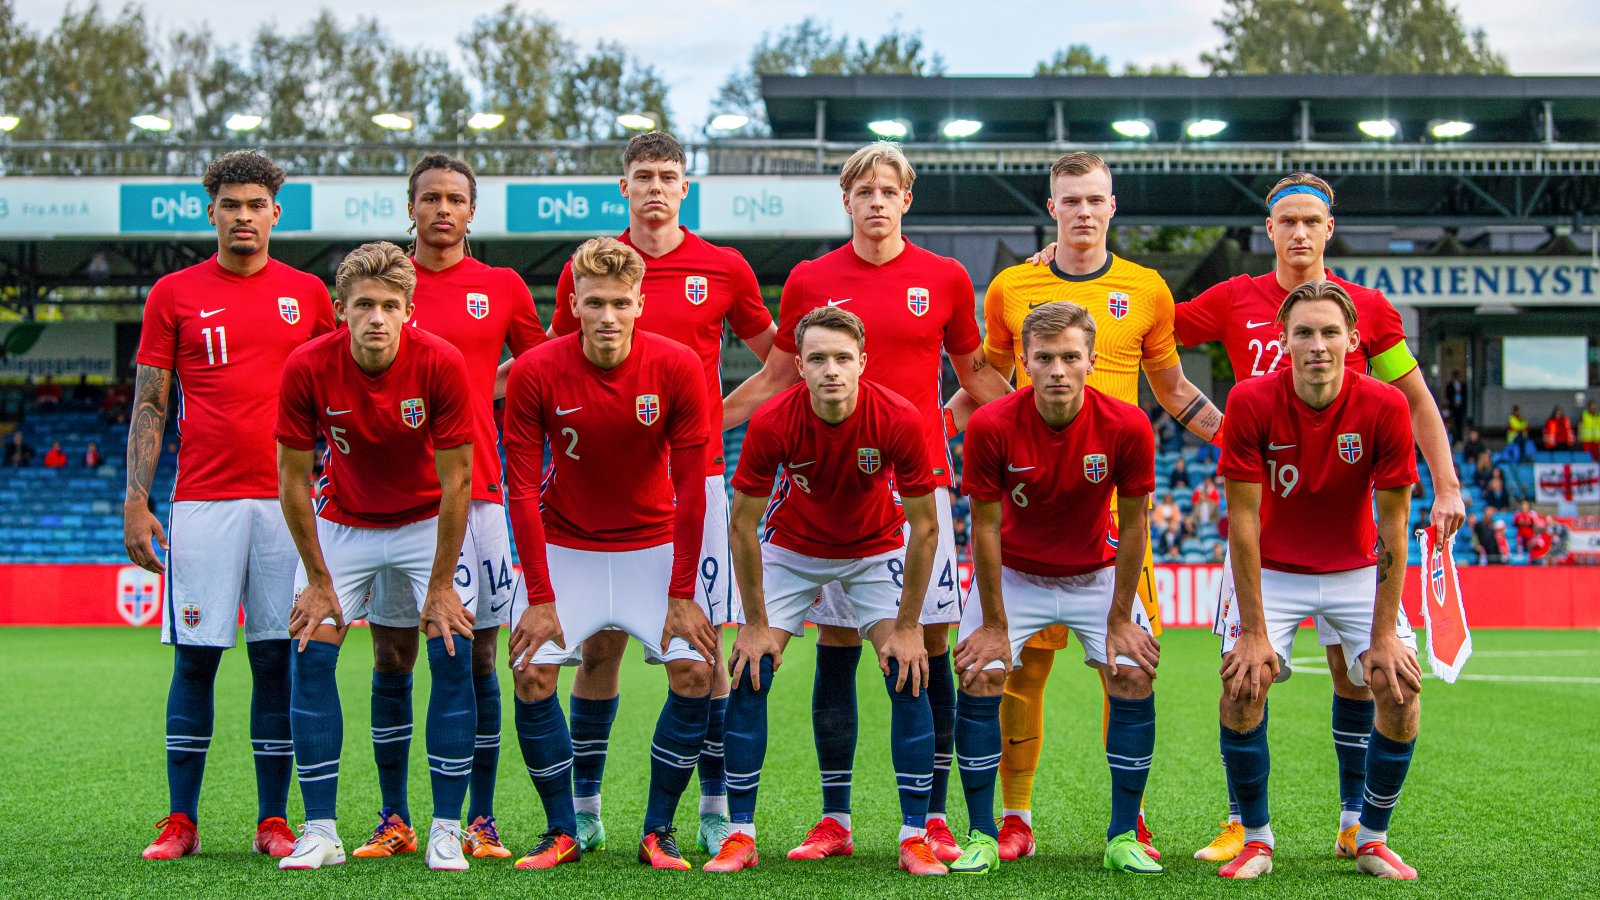 Norge U21 Sebulonsen